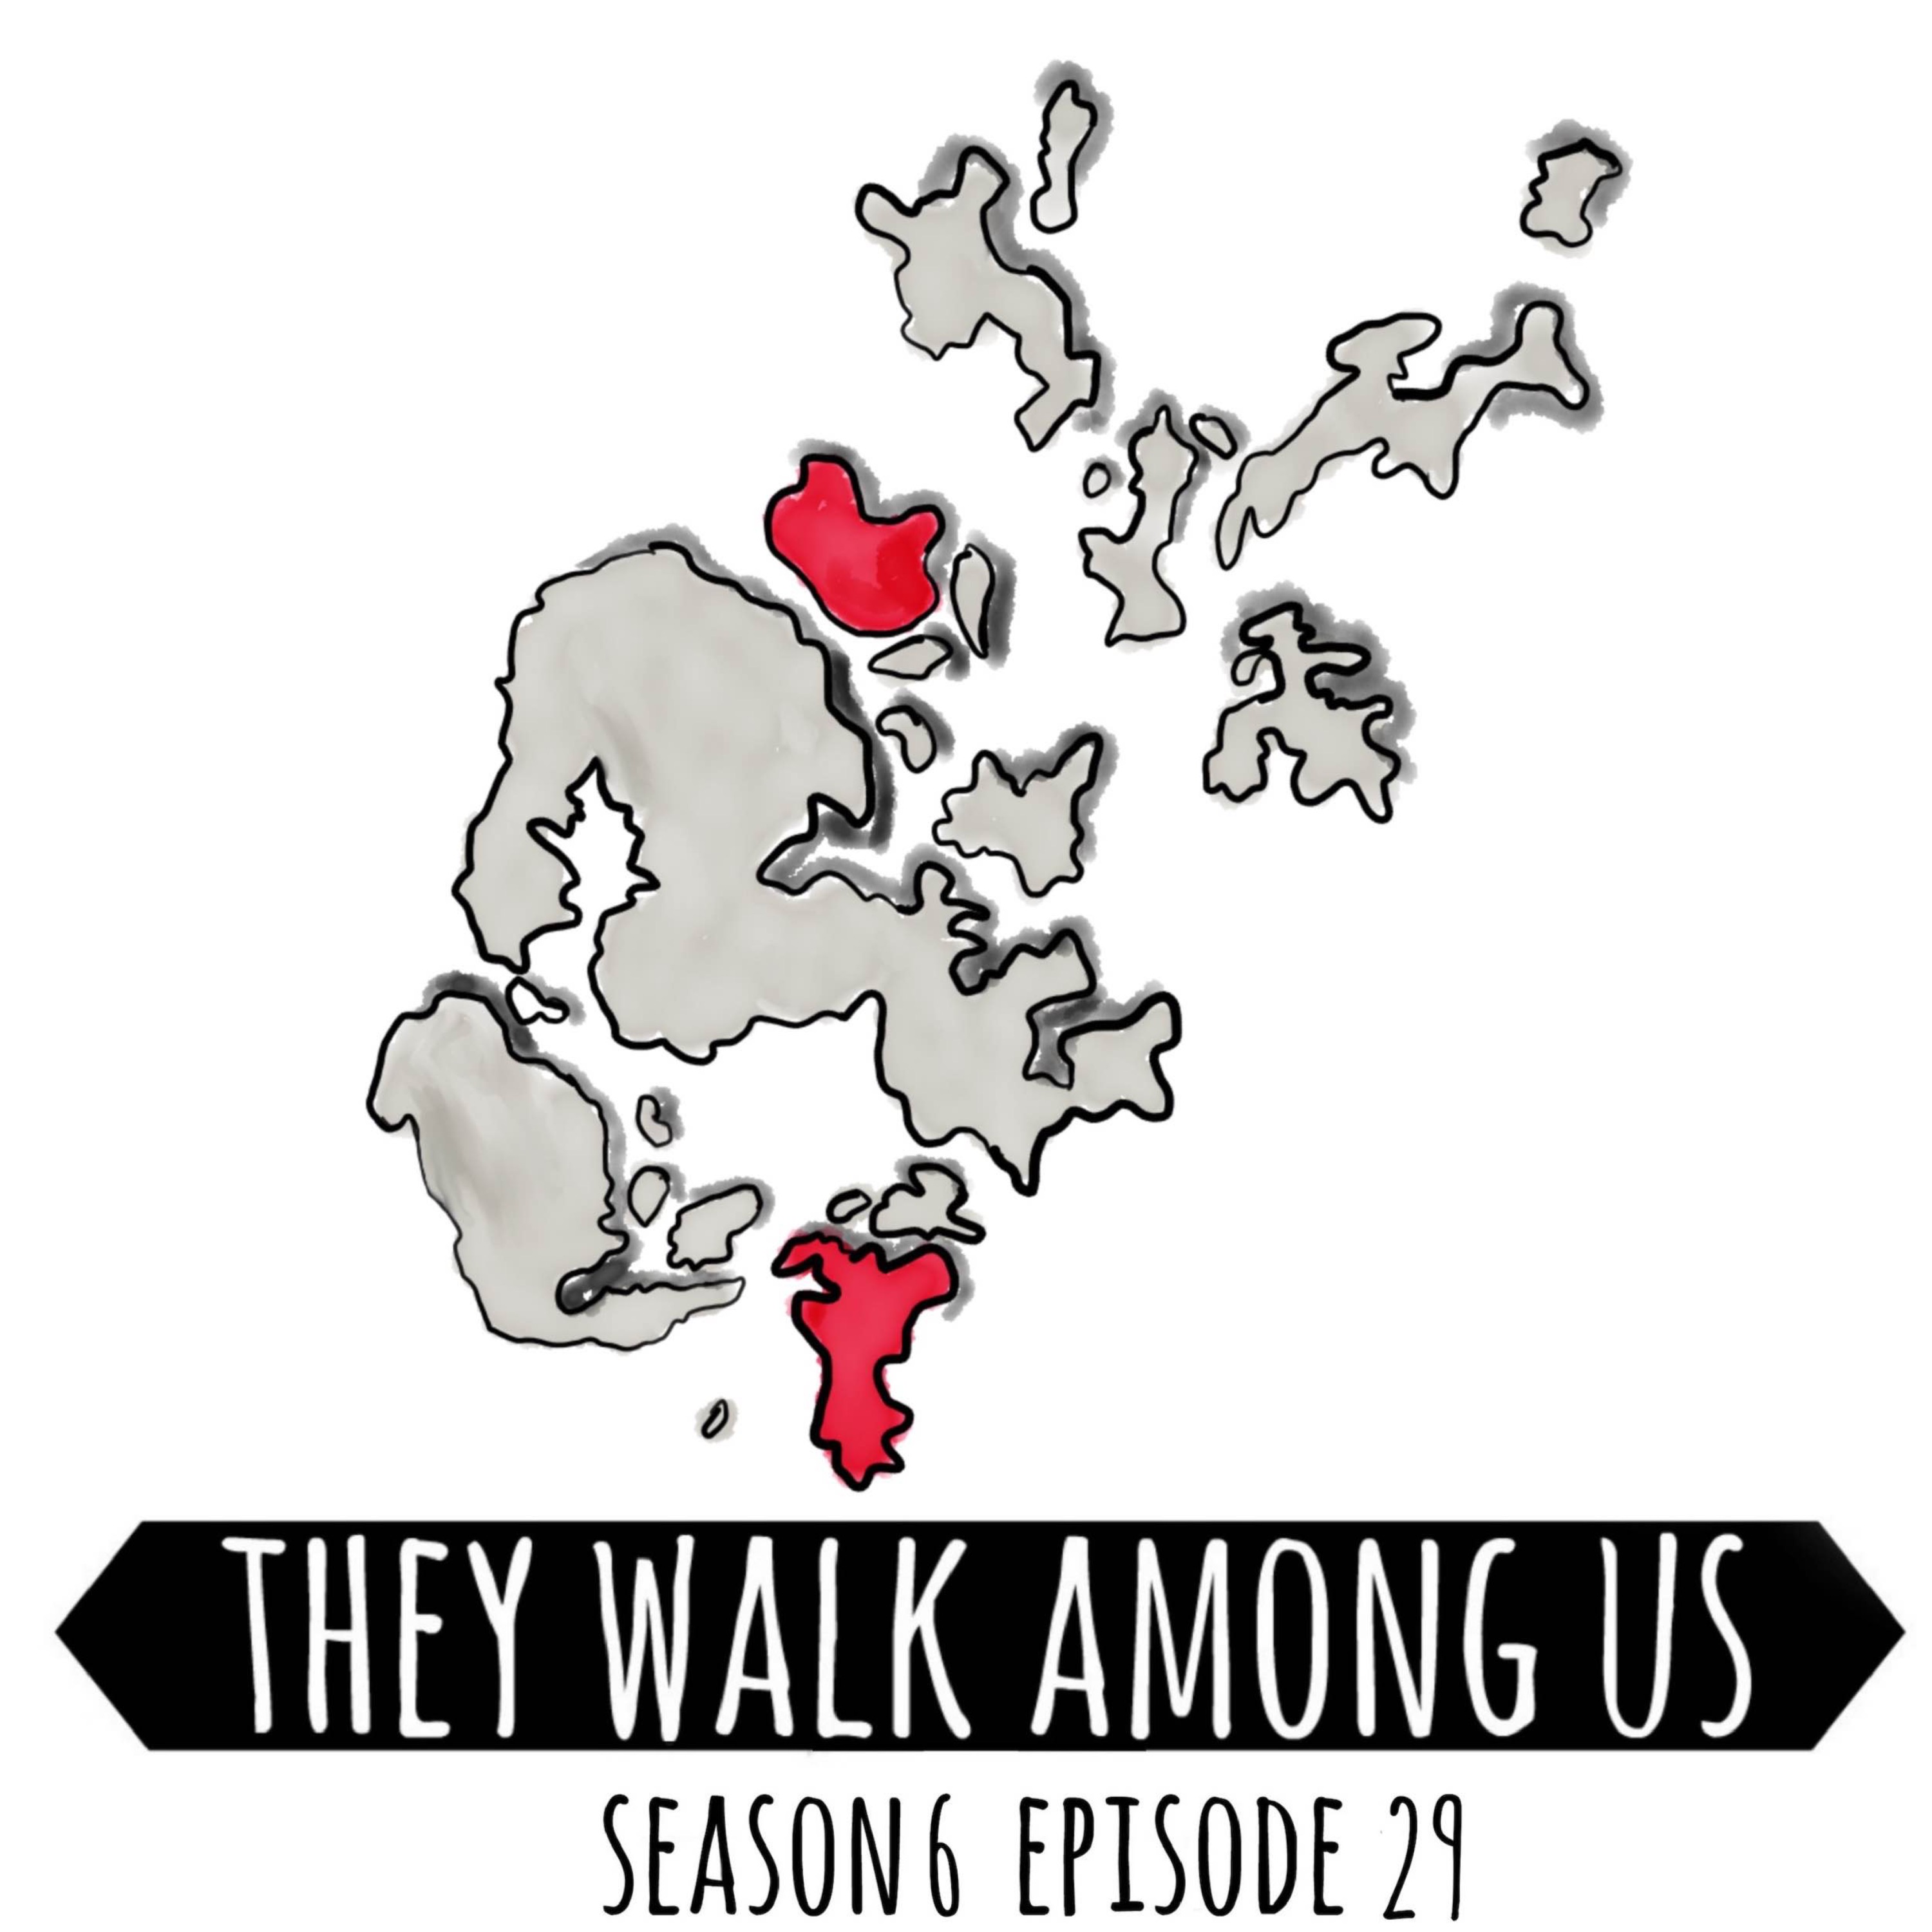 Season 6 - Episode 29